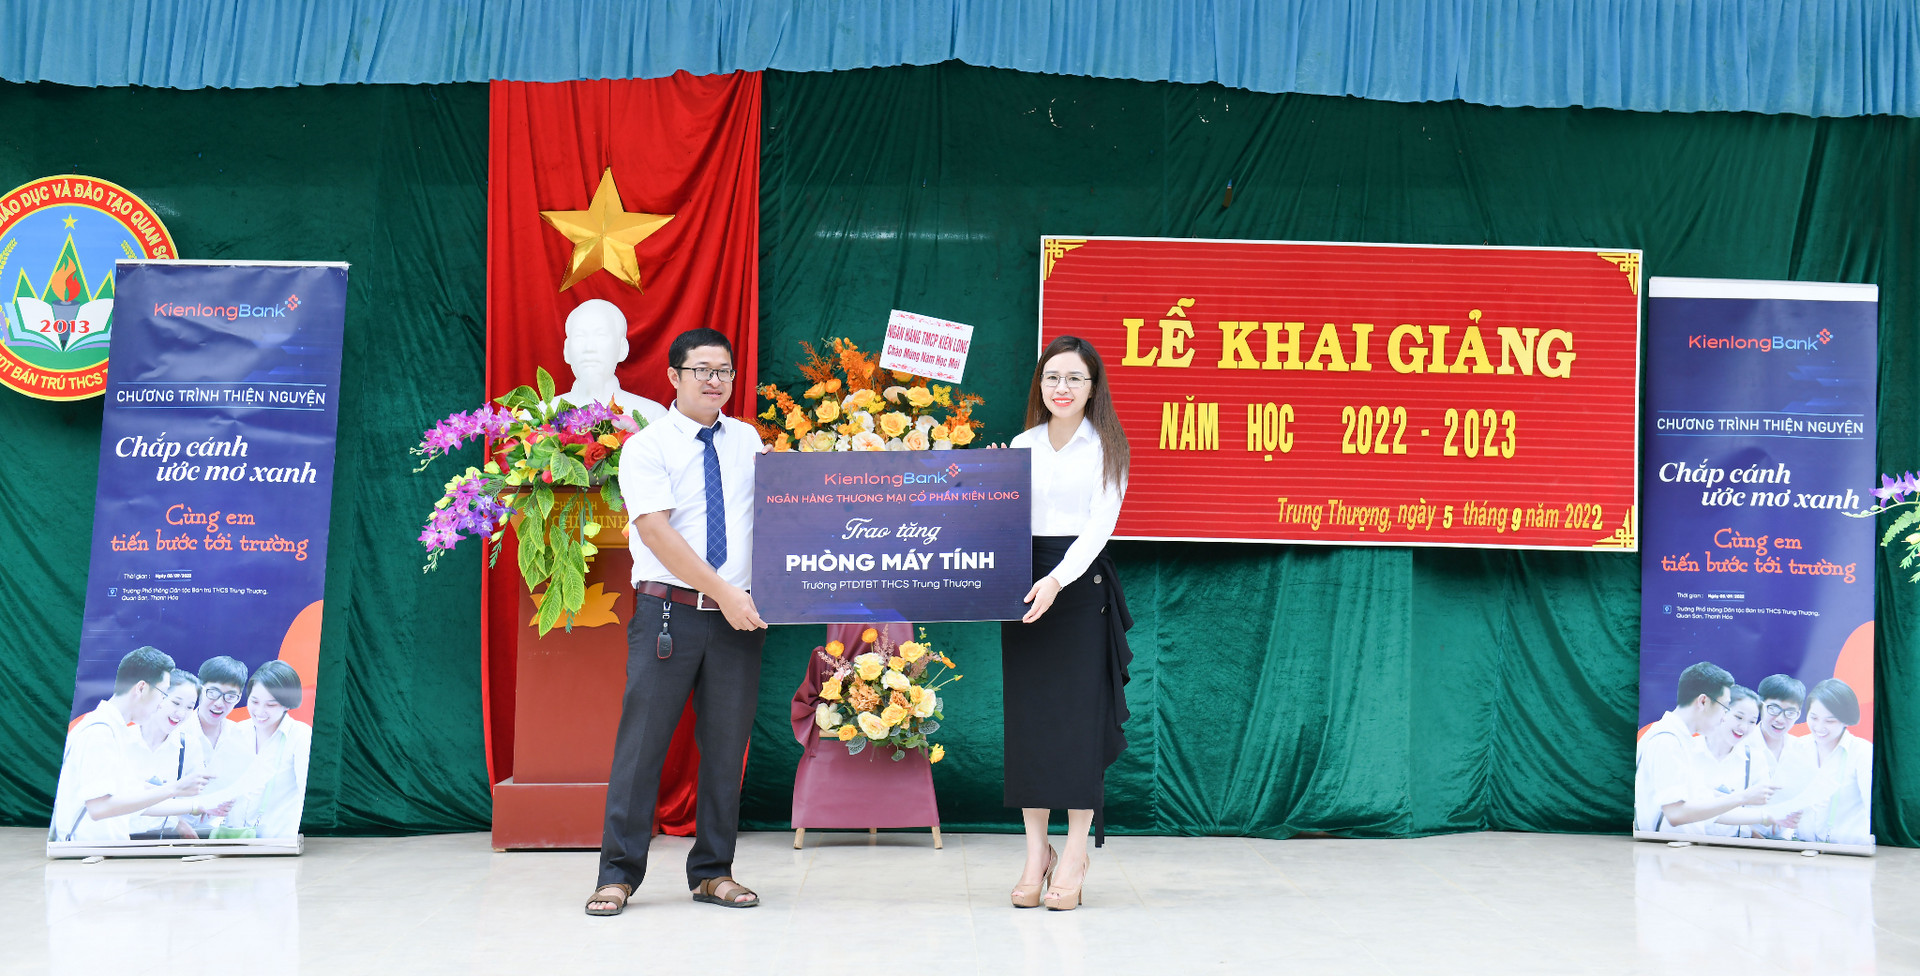 Bà Trần Thị Thu Hằng - Chủ tịch HĐQT Ngân hàng Kiên Long đại diện trao tặng Phòng máy tính cho Ban Lãnh đạo trường PTDTBT THCS Trung SThượng